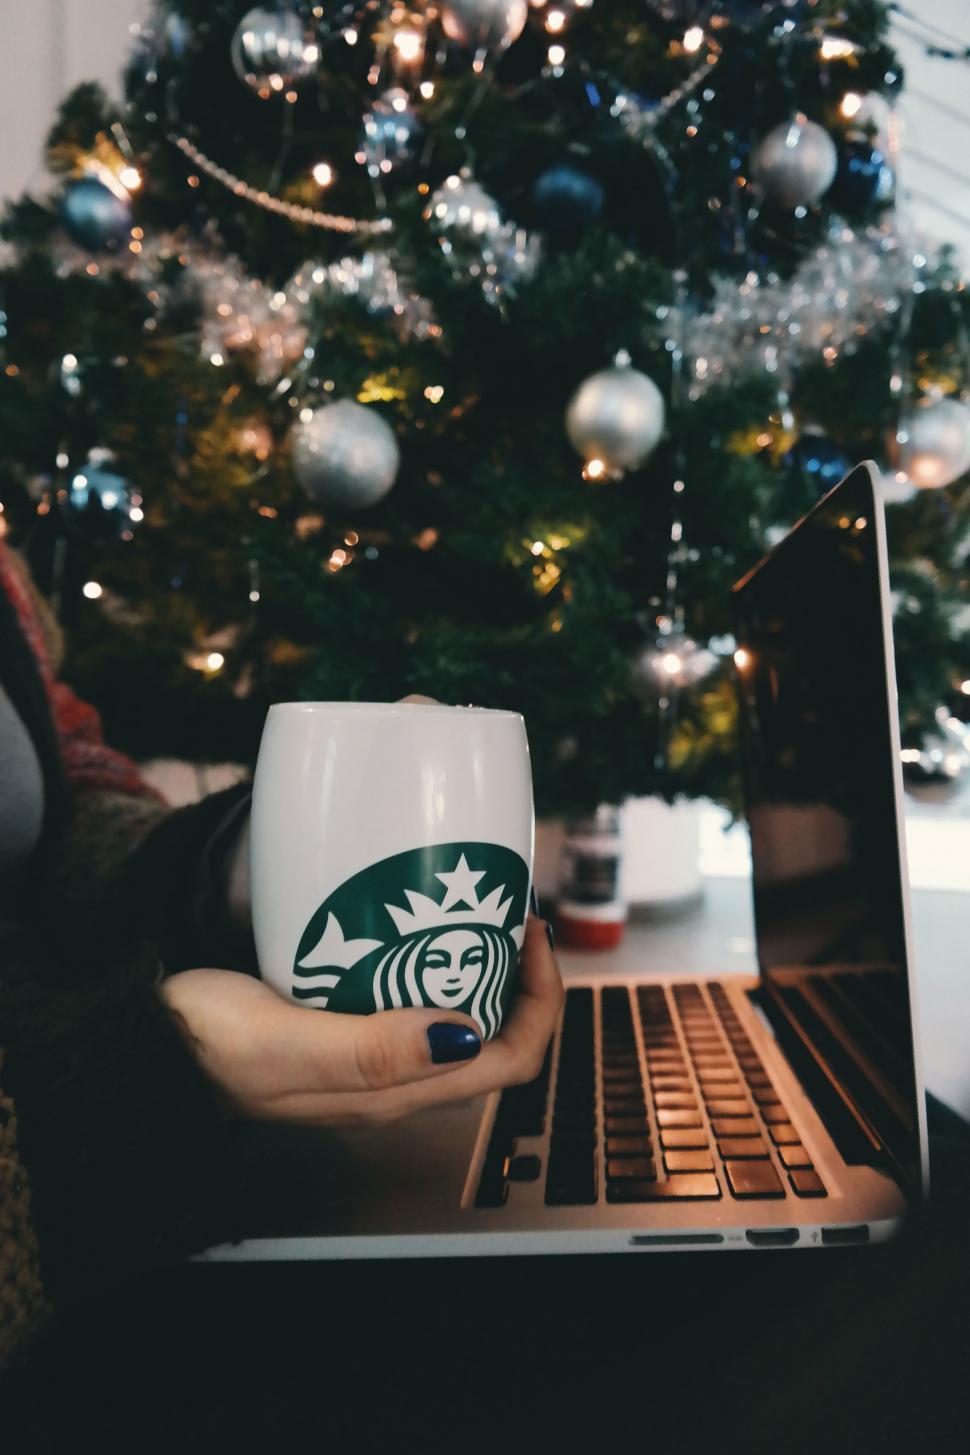 Free Image of Starbucks Coffee Mug and Christmas Tree 